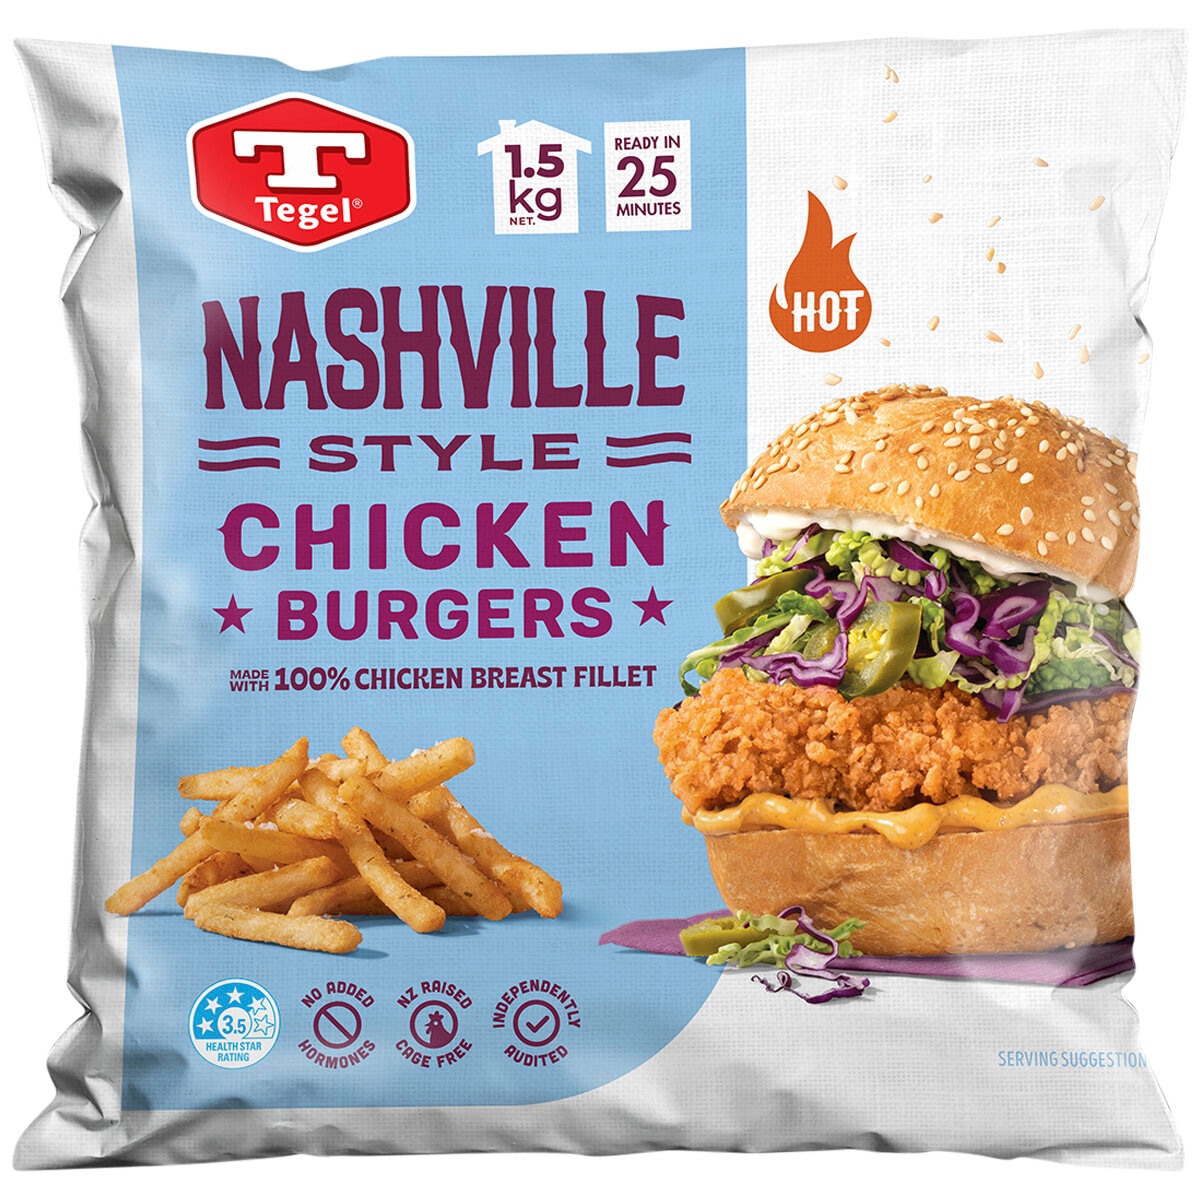 Tegel Nashville Style Chicken Burger 1.5kg - Grocery Same Day Delivery